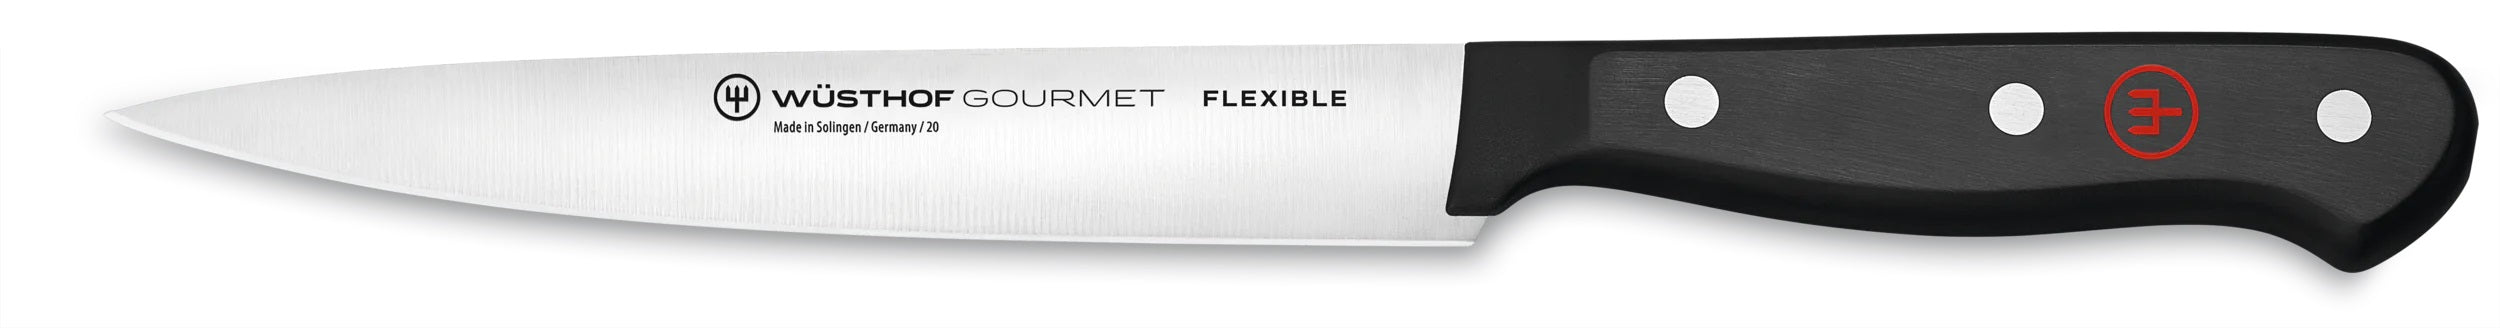 Wusthof Gourmet 6" Flexible Fillet Knife 1025049116